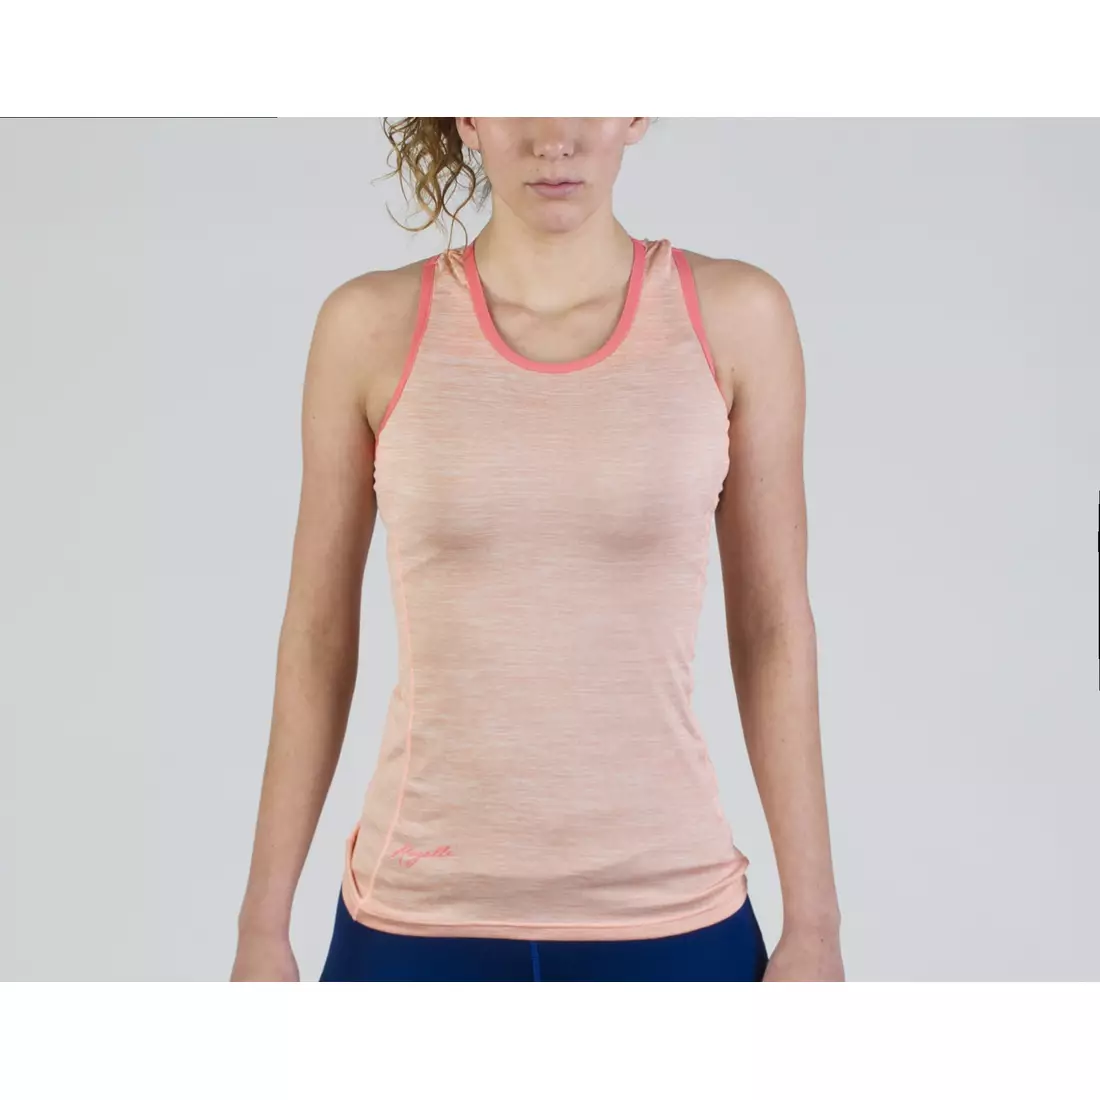 ROGELLI RUN DESIRE 840.265 - dámské běžecké tričko, tílko, pink-coral